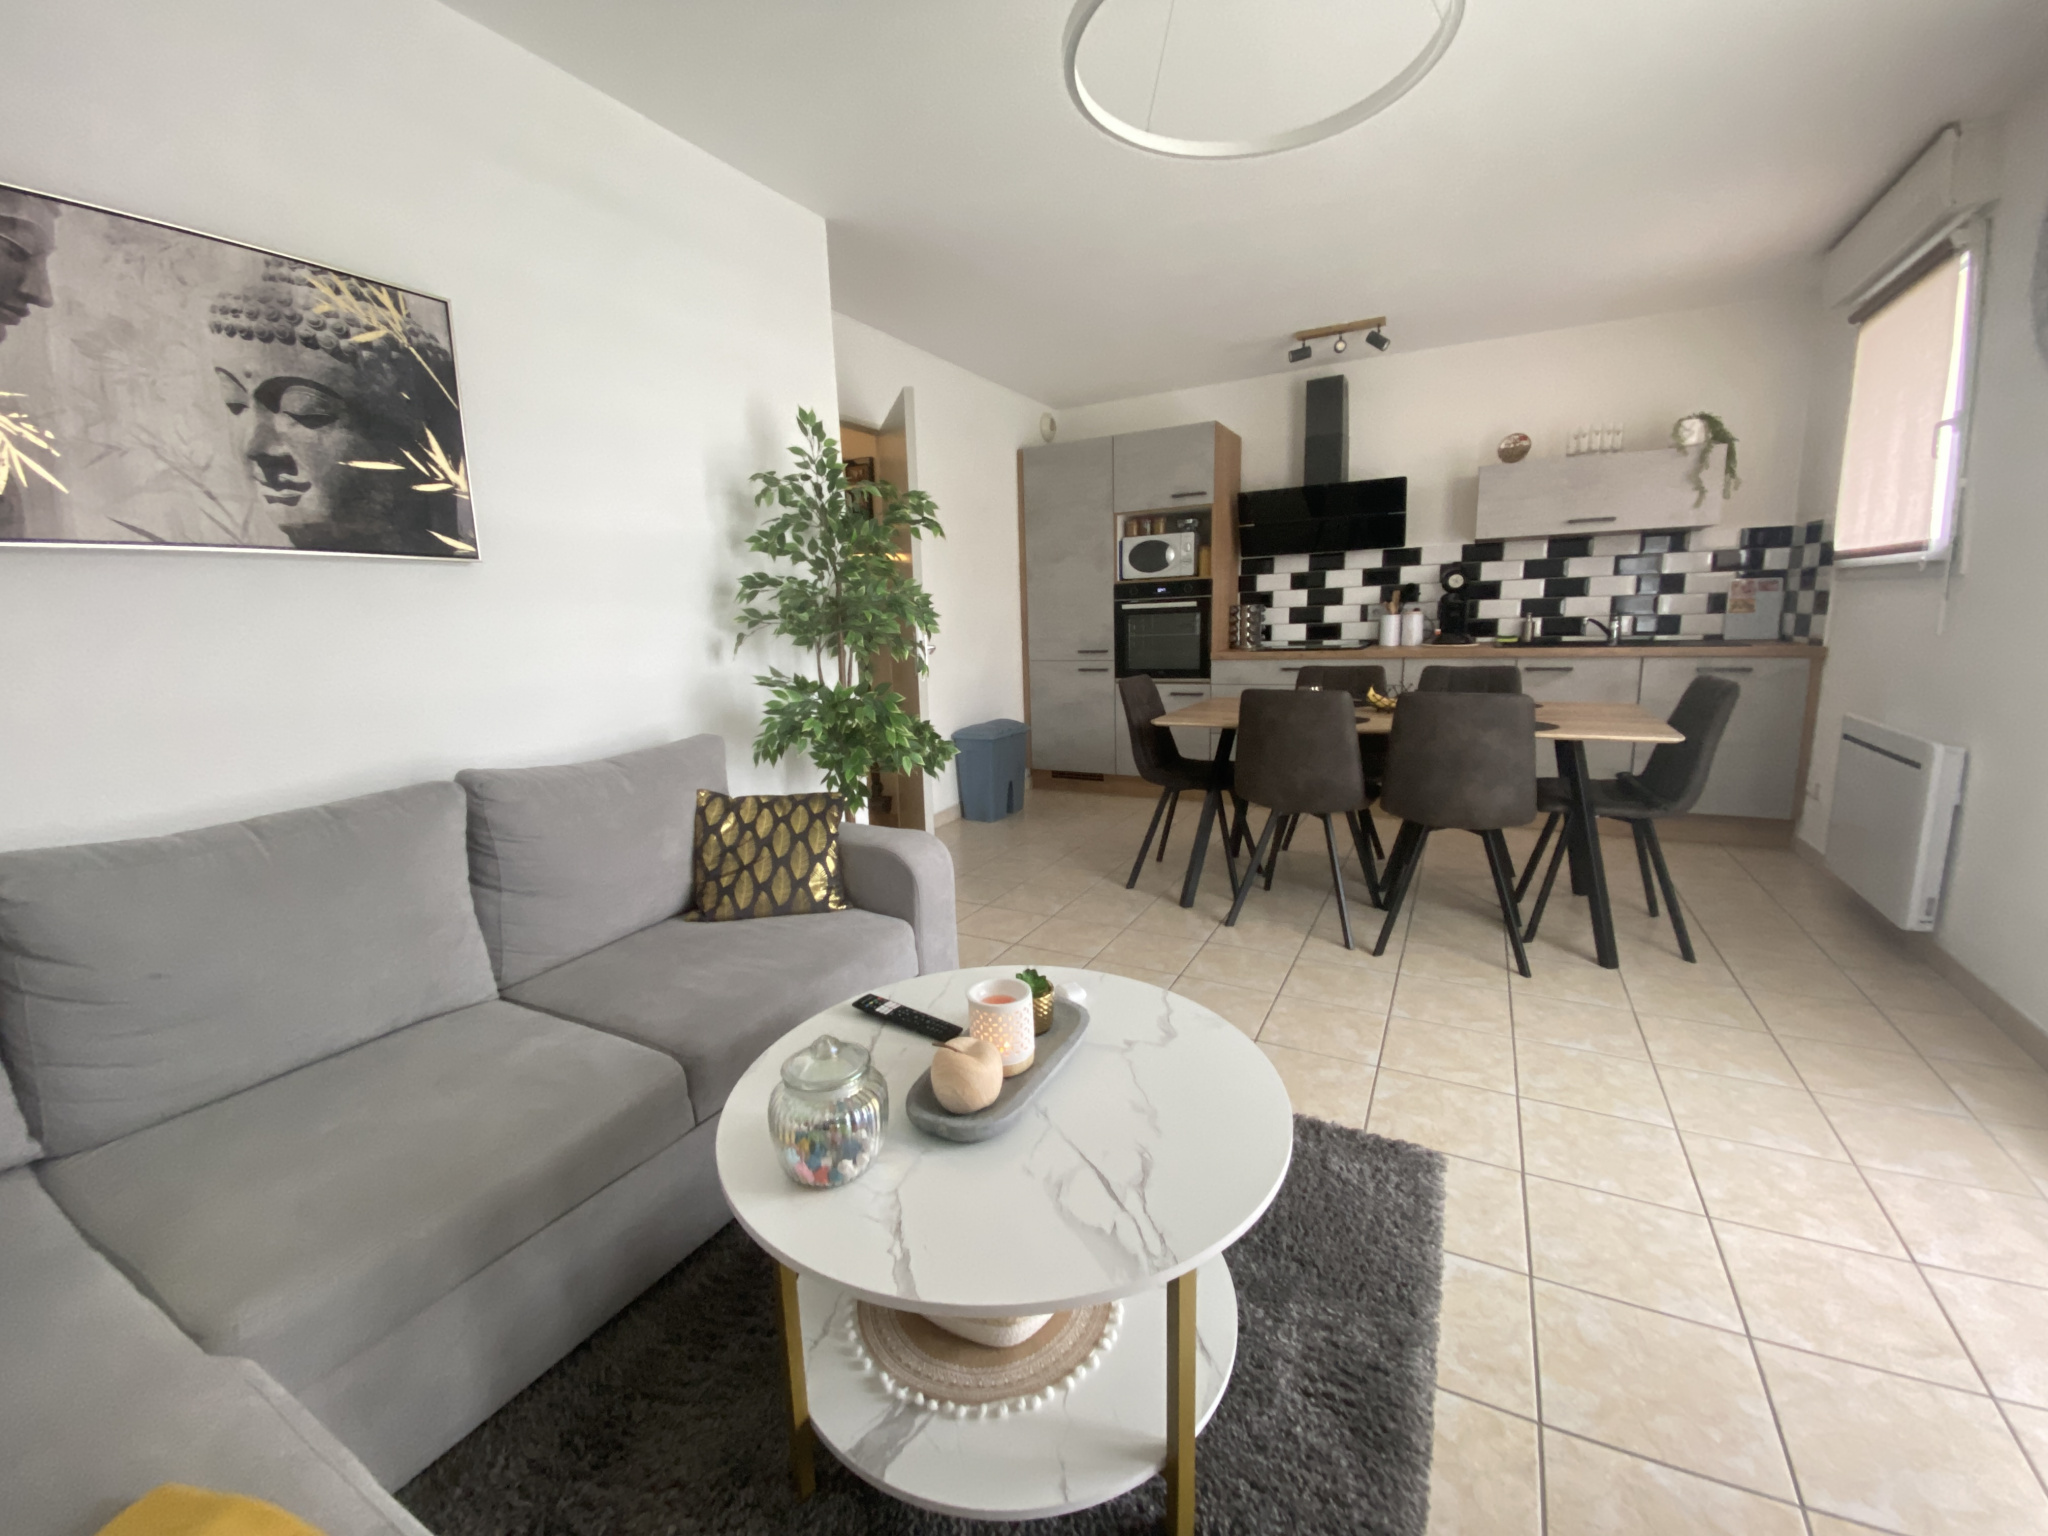 Appartement F2 meublé à Creutzwald 560EUR/mois charges compris